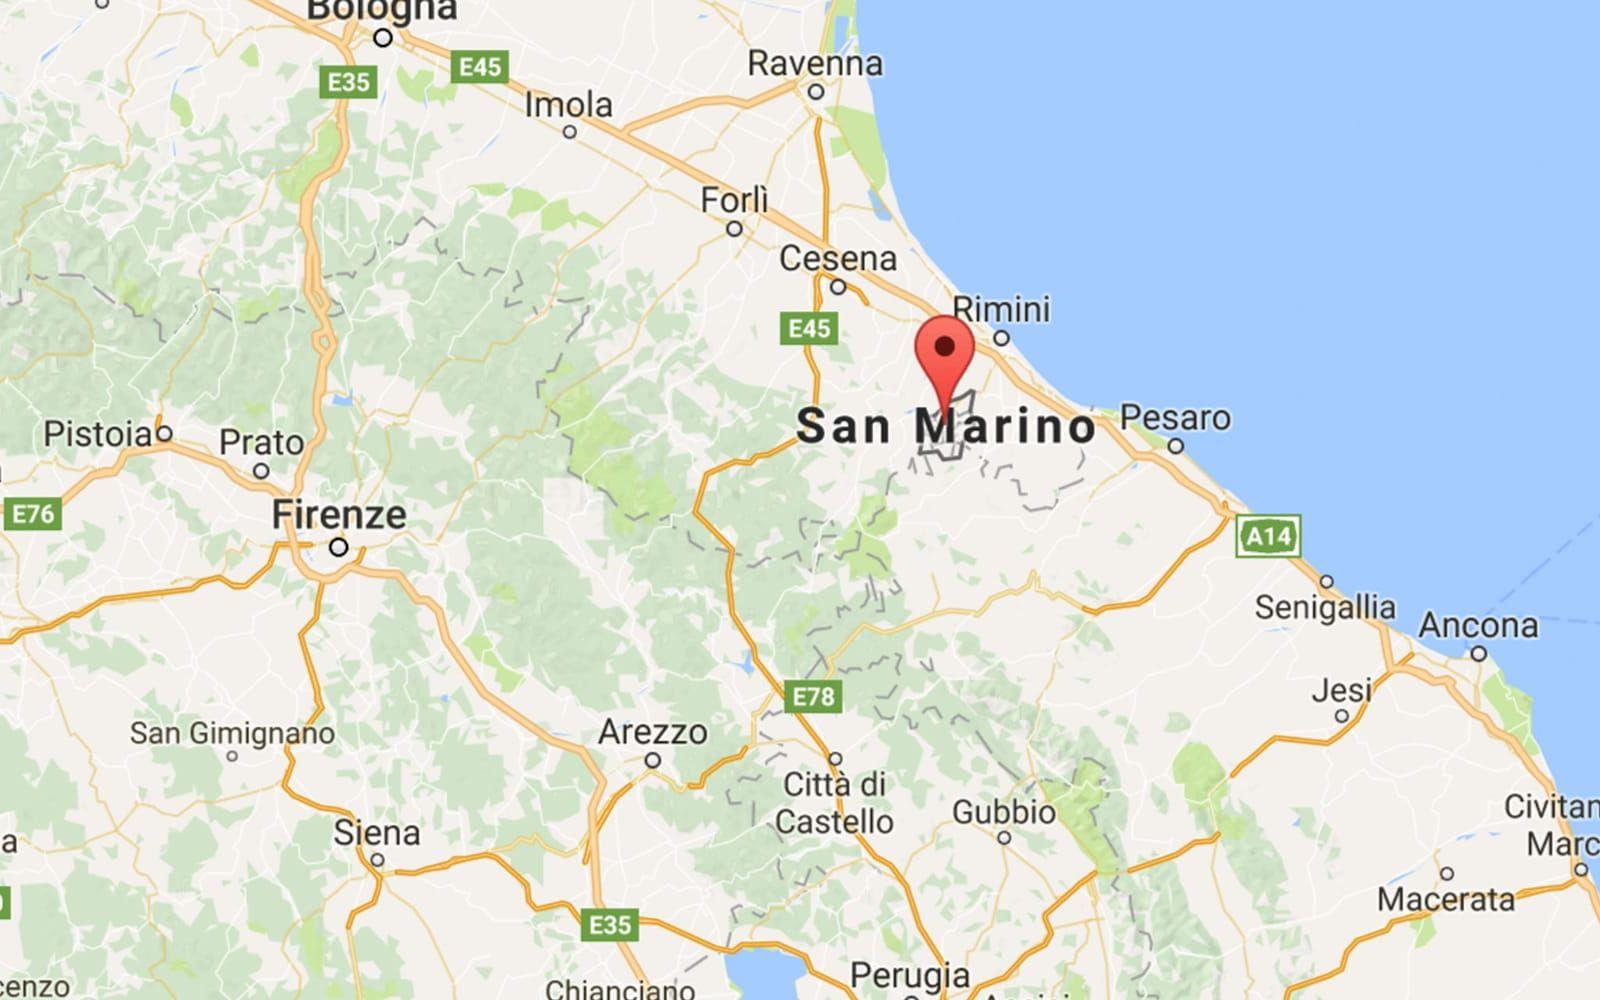 <strong>VÄRLDENS ÄLDSTA NATION.</strong> San Marino, en enklav i nordöstra Italien, grundades år 301 och gör anspråk på att vara världens äldsta republik.